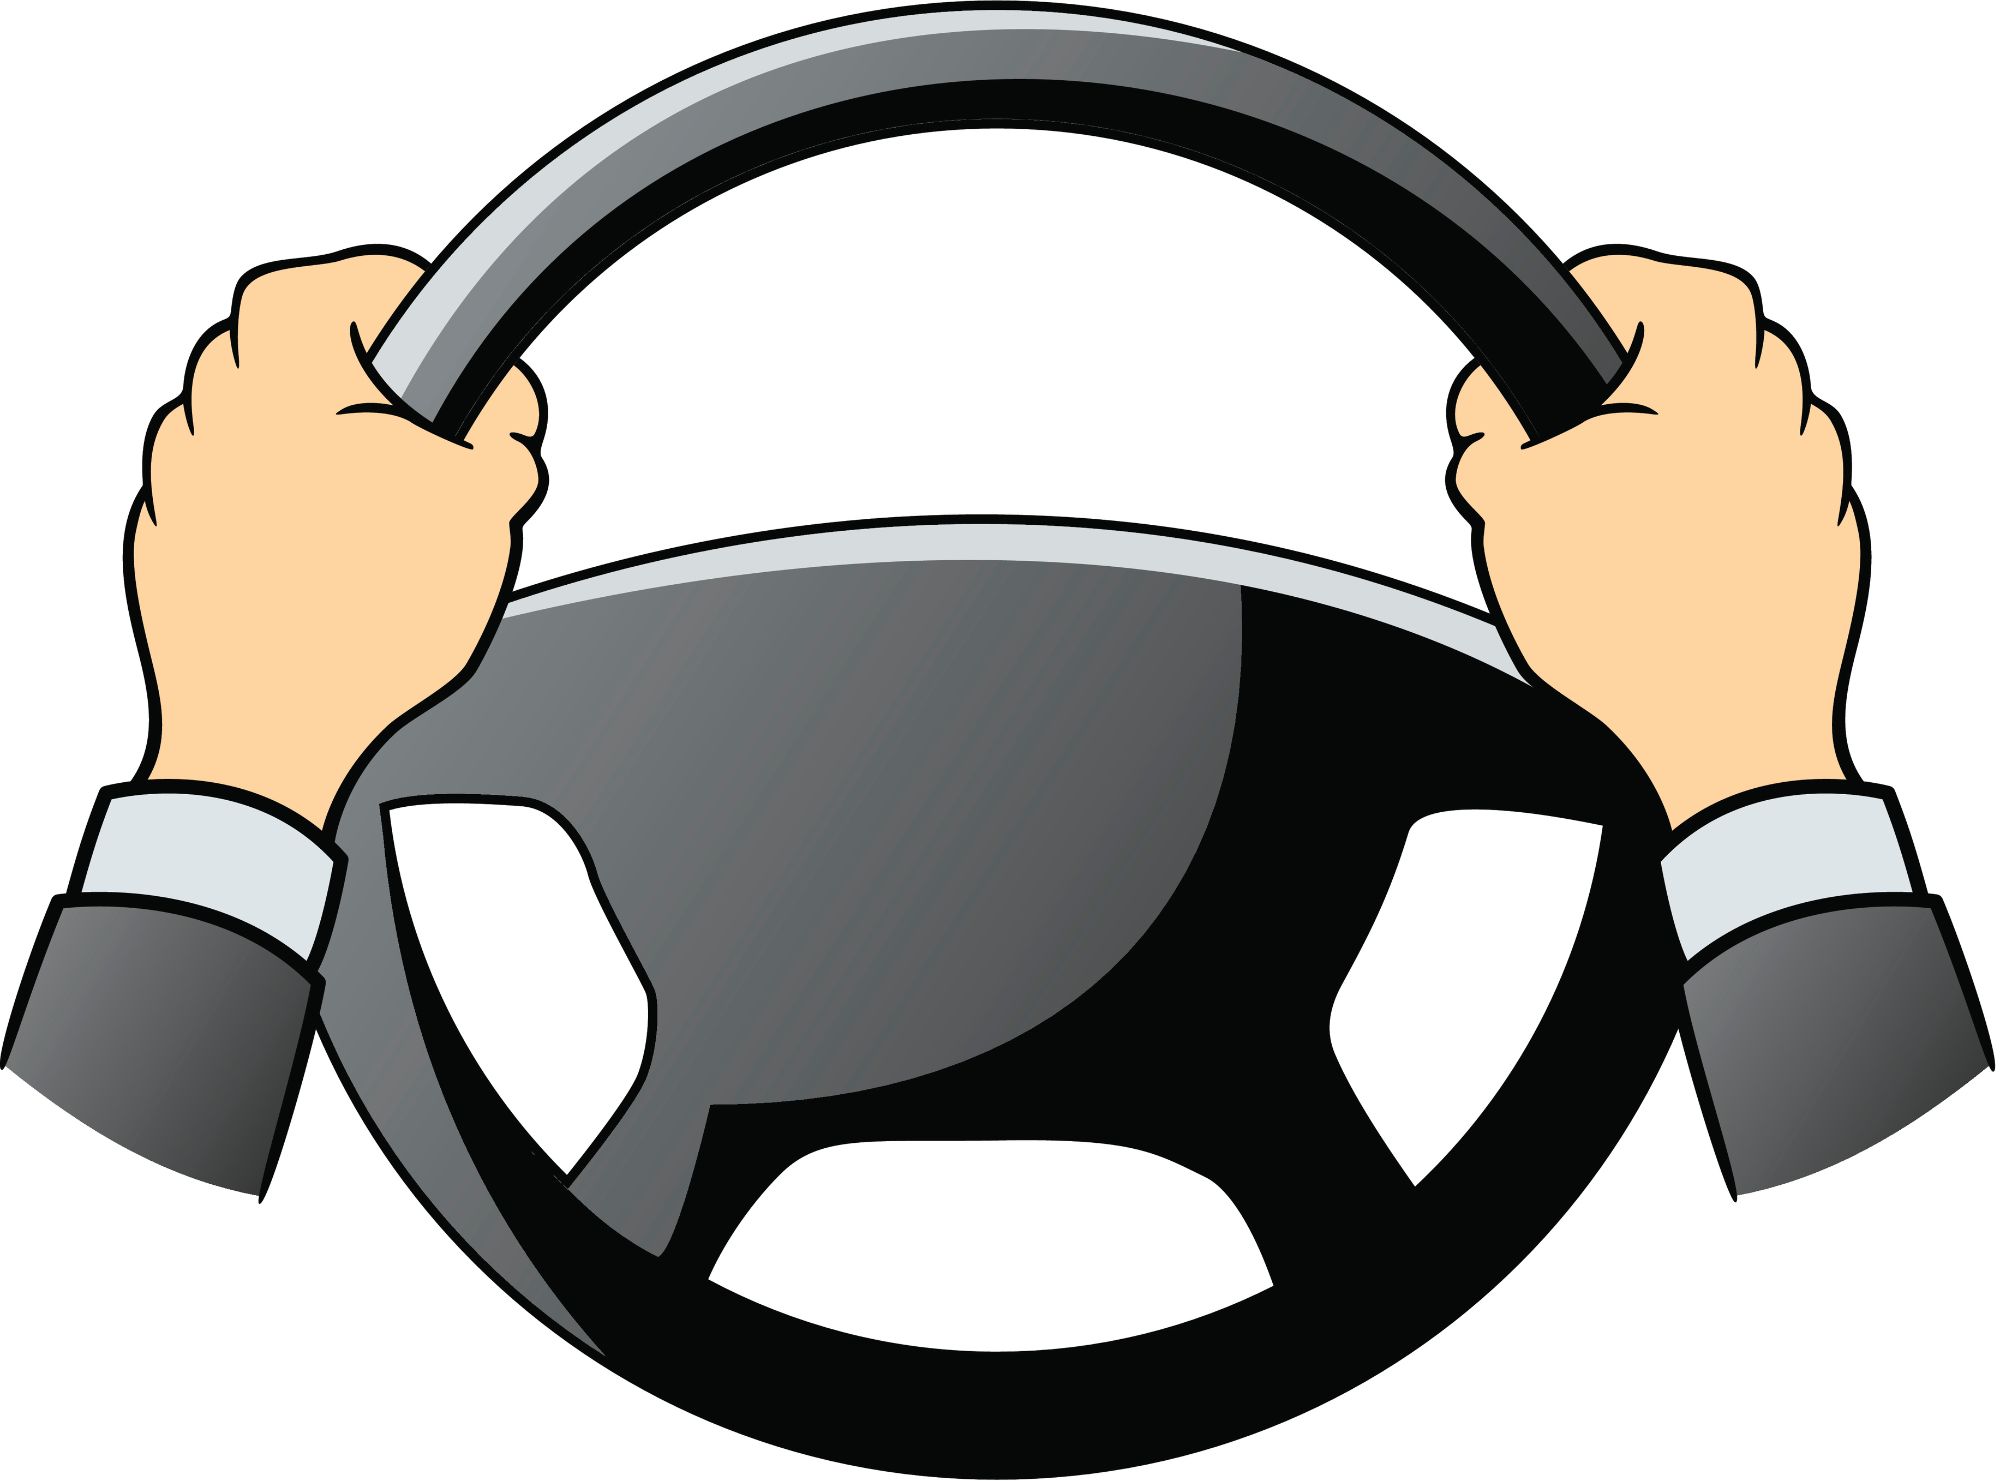 emergency stop hands on steering wheel